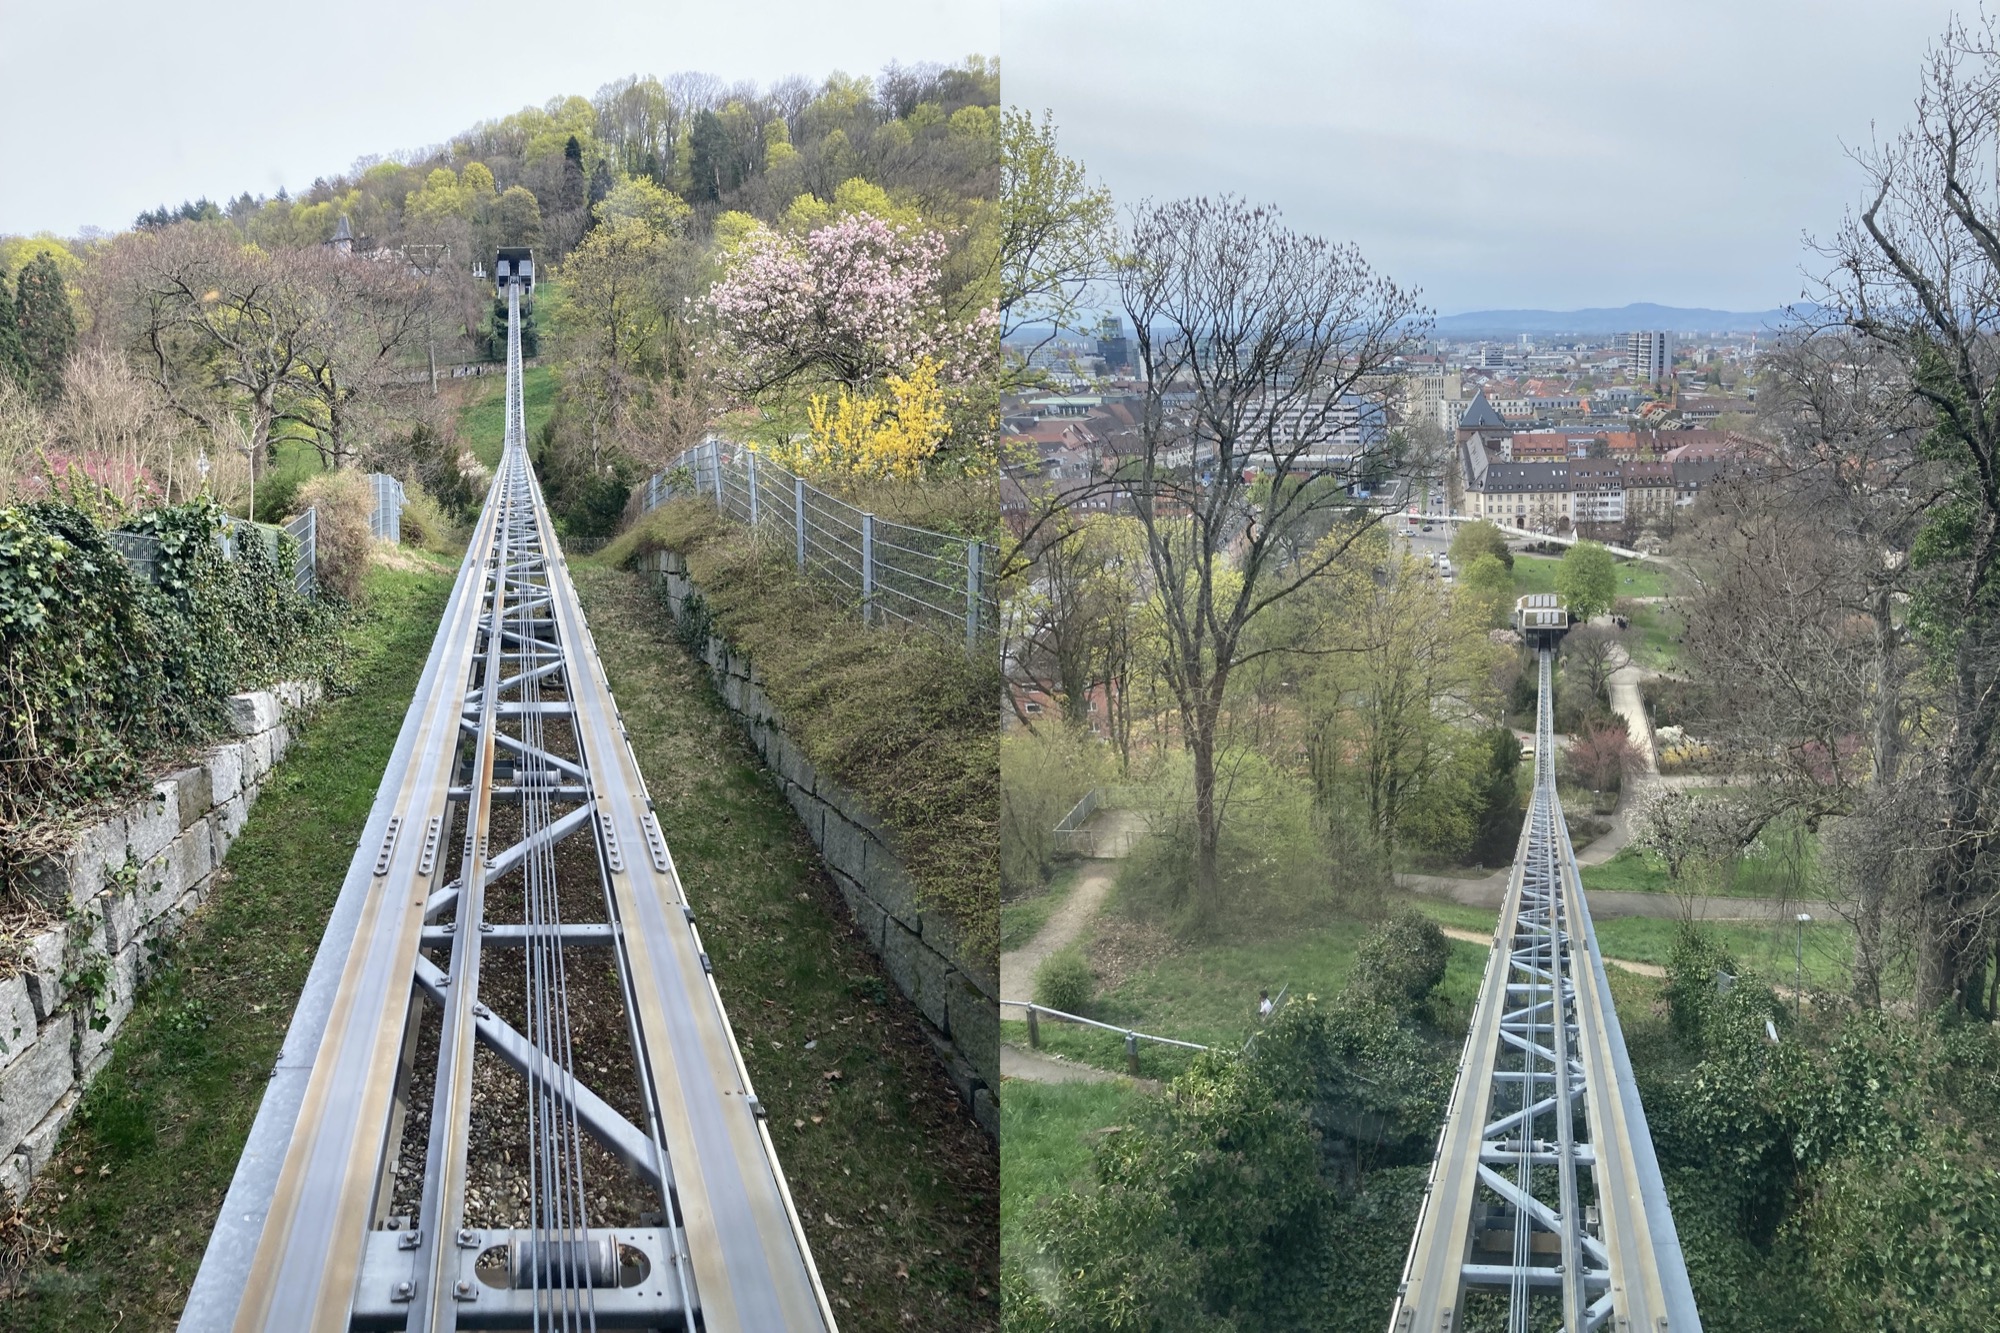 nebeneinander zwei Perspektiven aus der Schlossbergbahn, links von unten nach oben gesehen, neben der Strecke blühende Bäume und Sträucher, rechts von oben nach unten gesehen, im Hintergrund die Freiburger Innenstadt